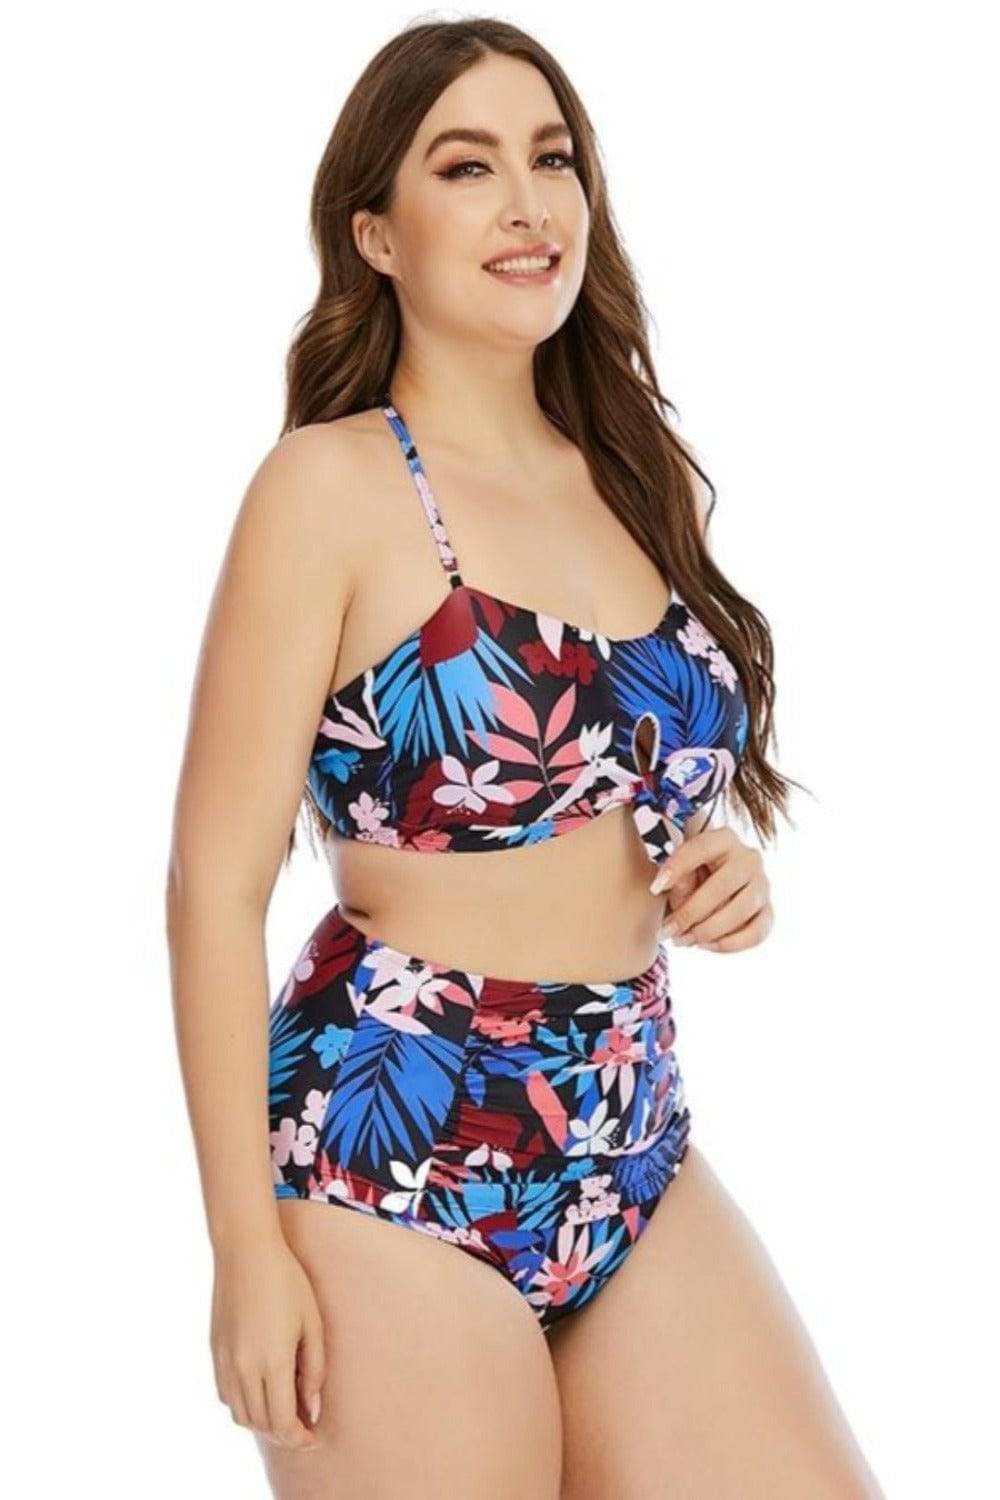 Floral Leaf Print Plus size High Waist Bikini Swimsuit - TGC Boutique - Plus Size Swimsuit